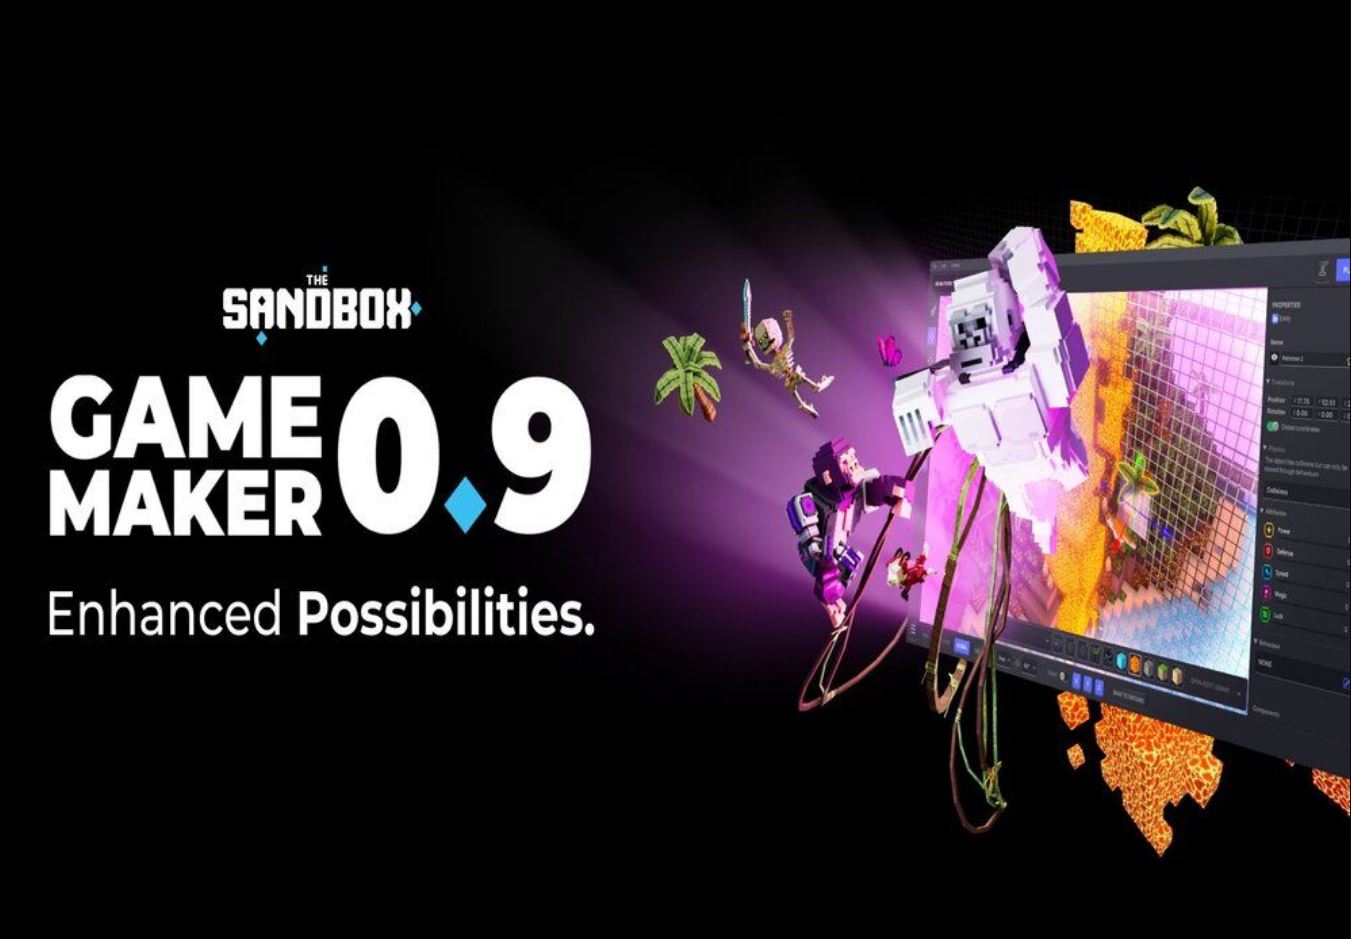 Byl spuštěn Sandbox Game Maker 0.9 s novými šablonami a dalšími vychytávkami